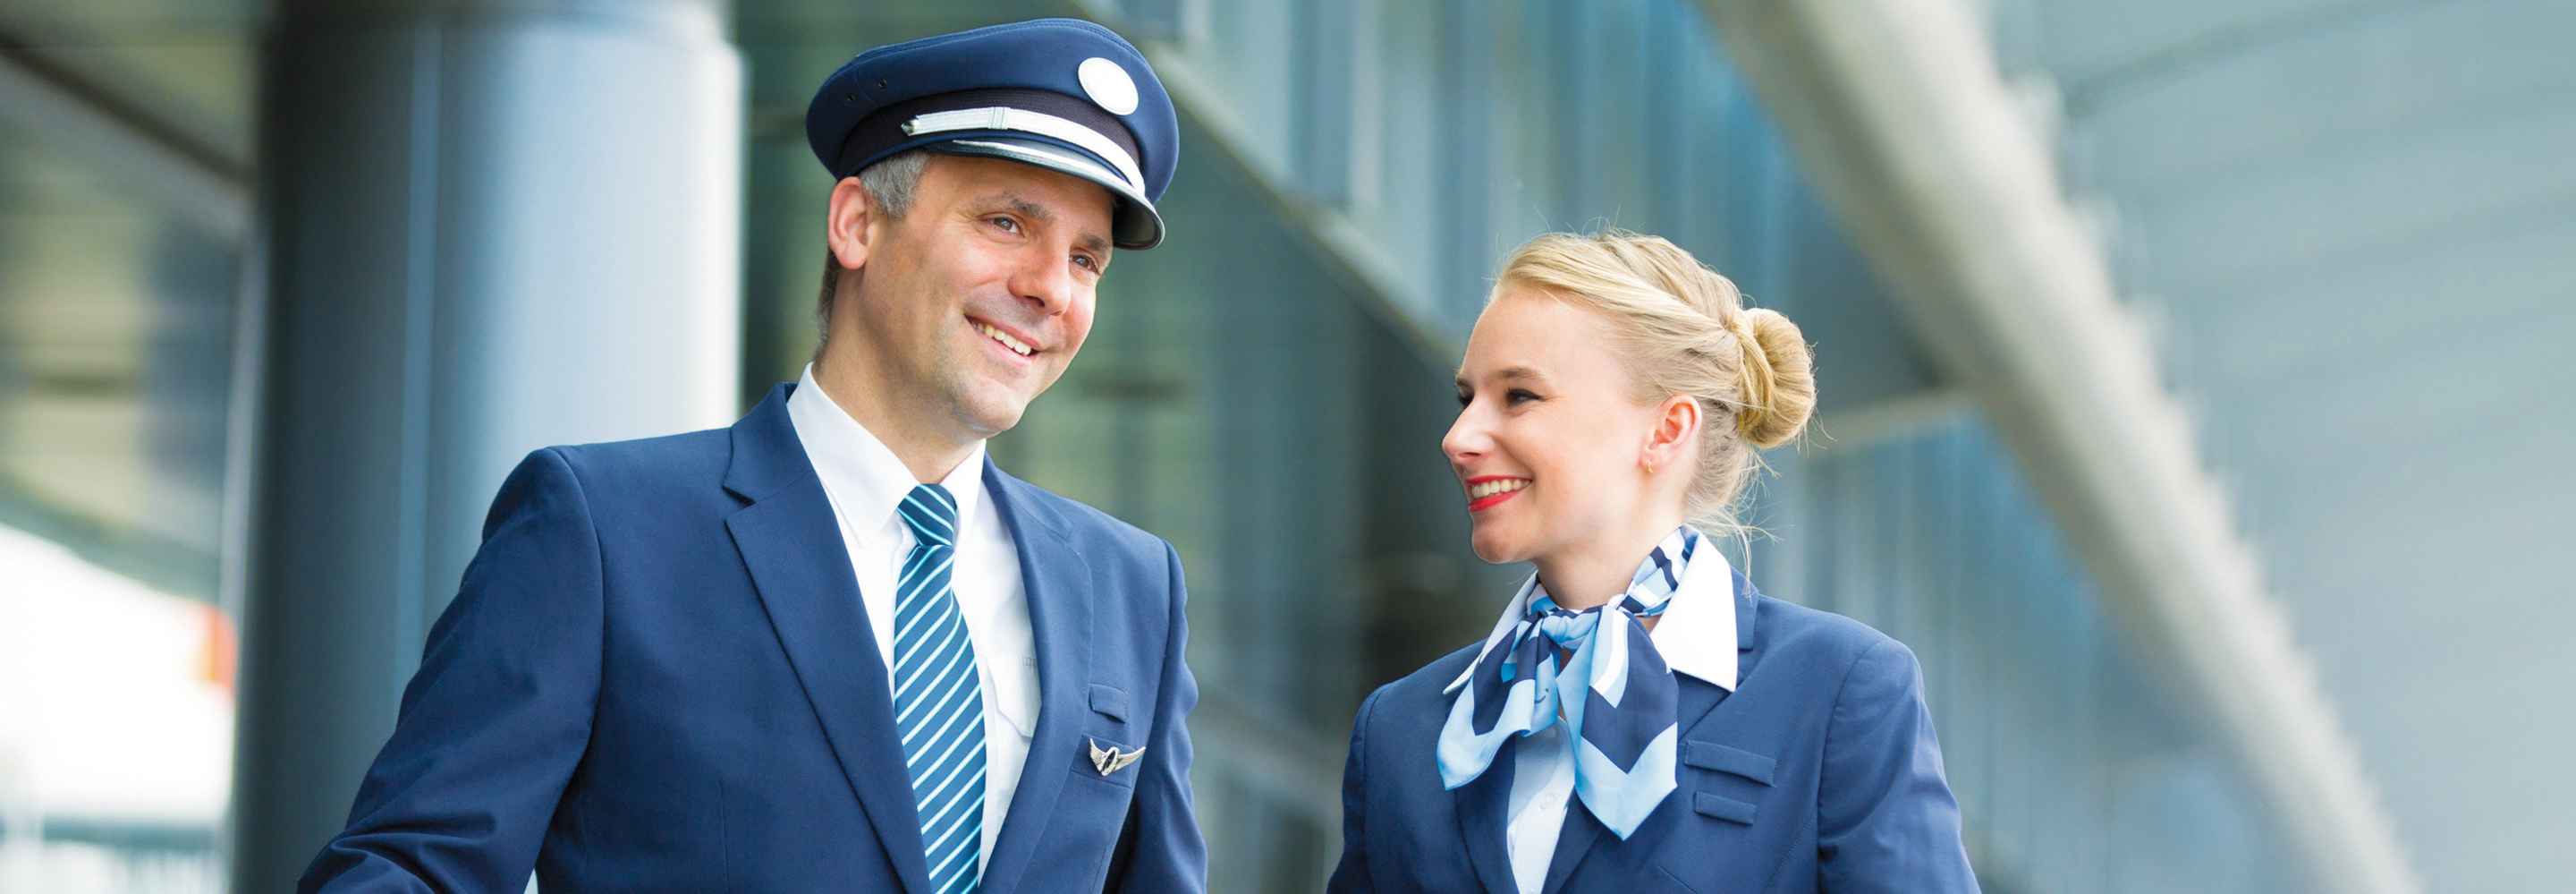 Ein Pilot und eine Flugbegleiterin in einem Flughafengebäude